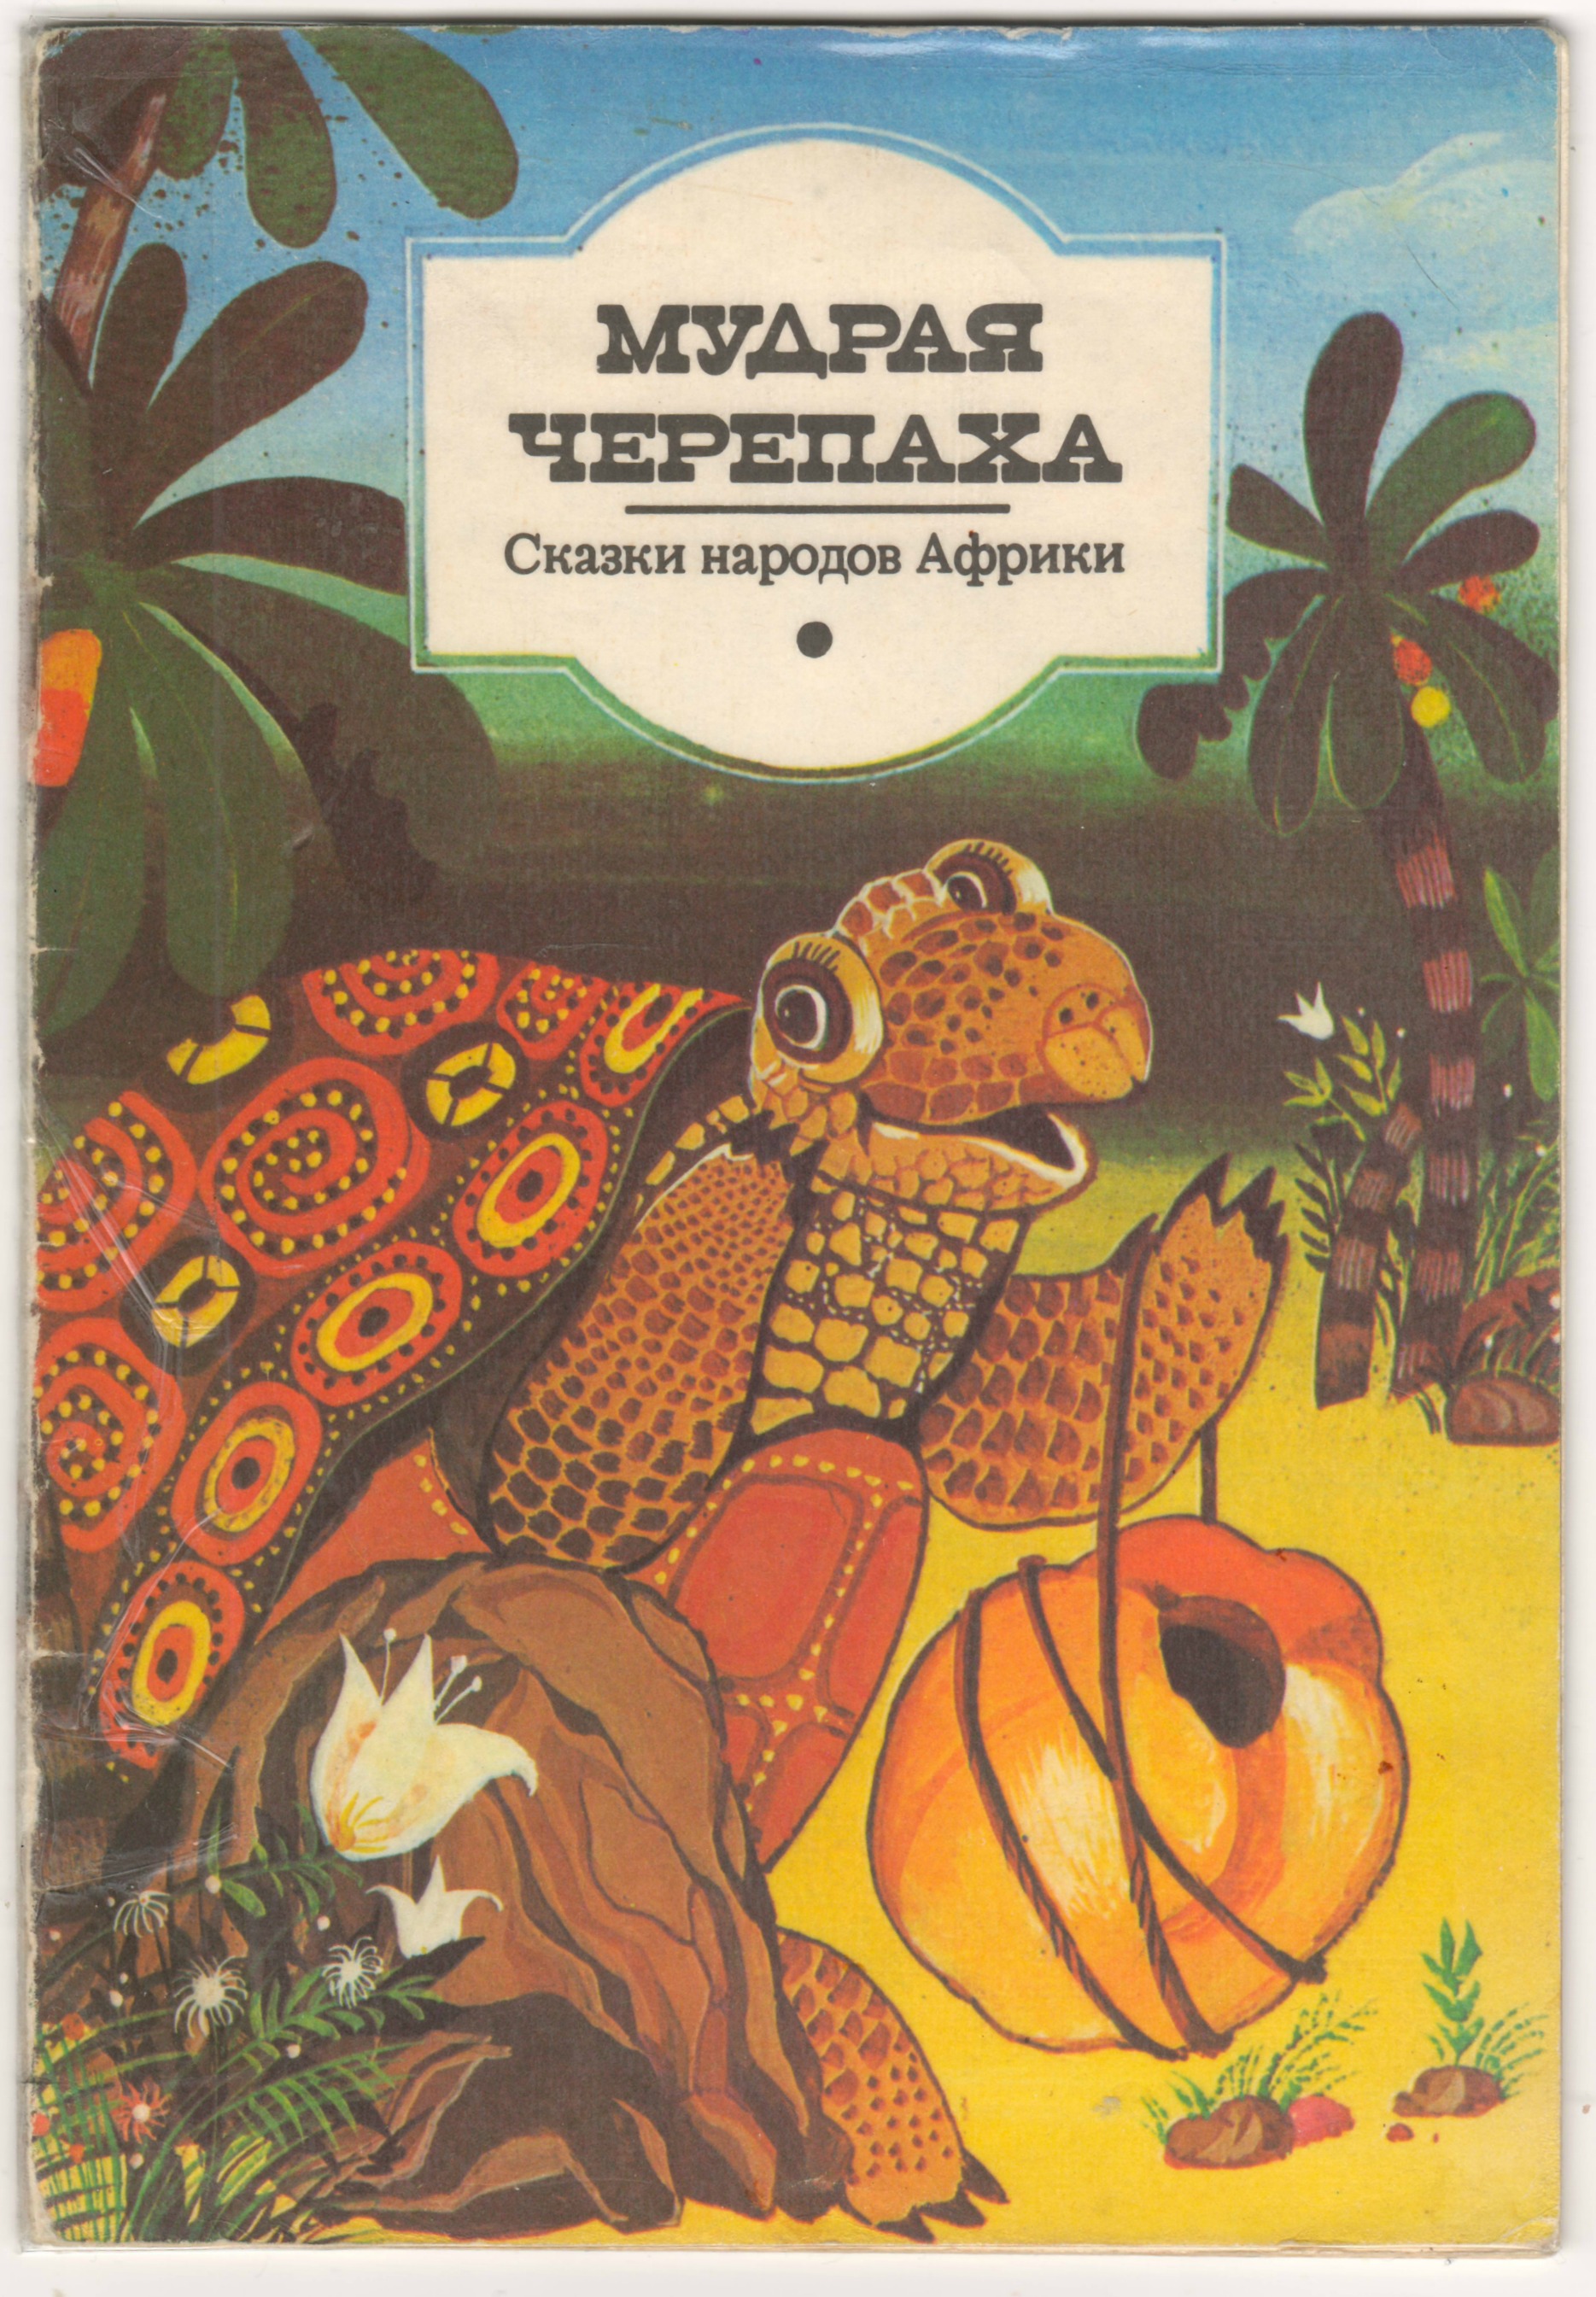 Африканские народные сказки — викифур, русскоязычная фурри-энциклопедия